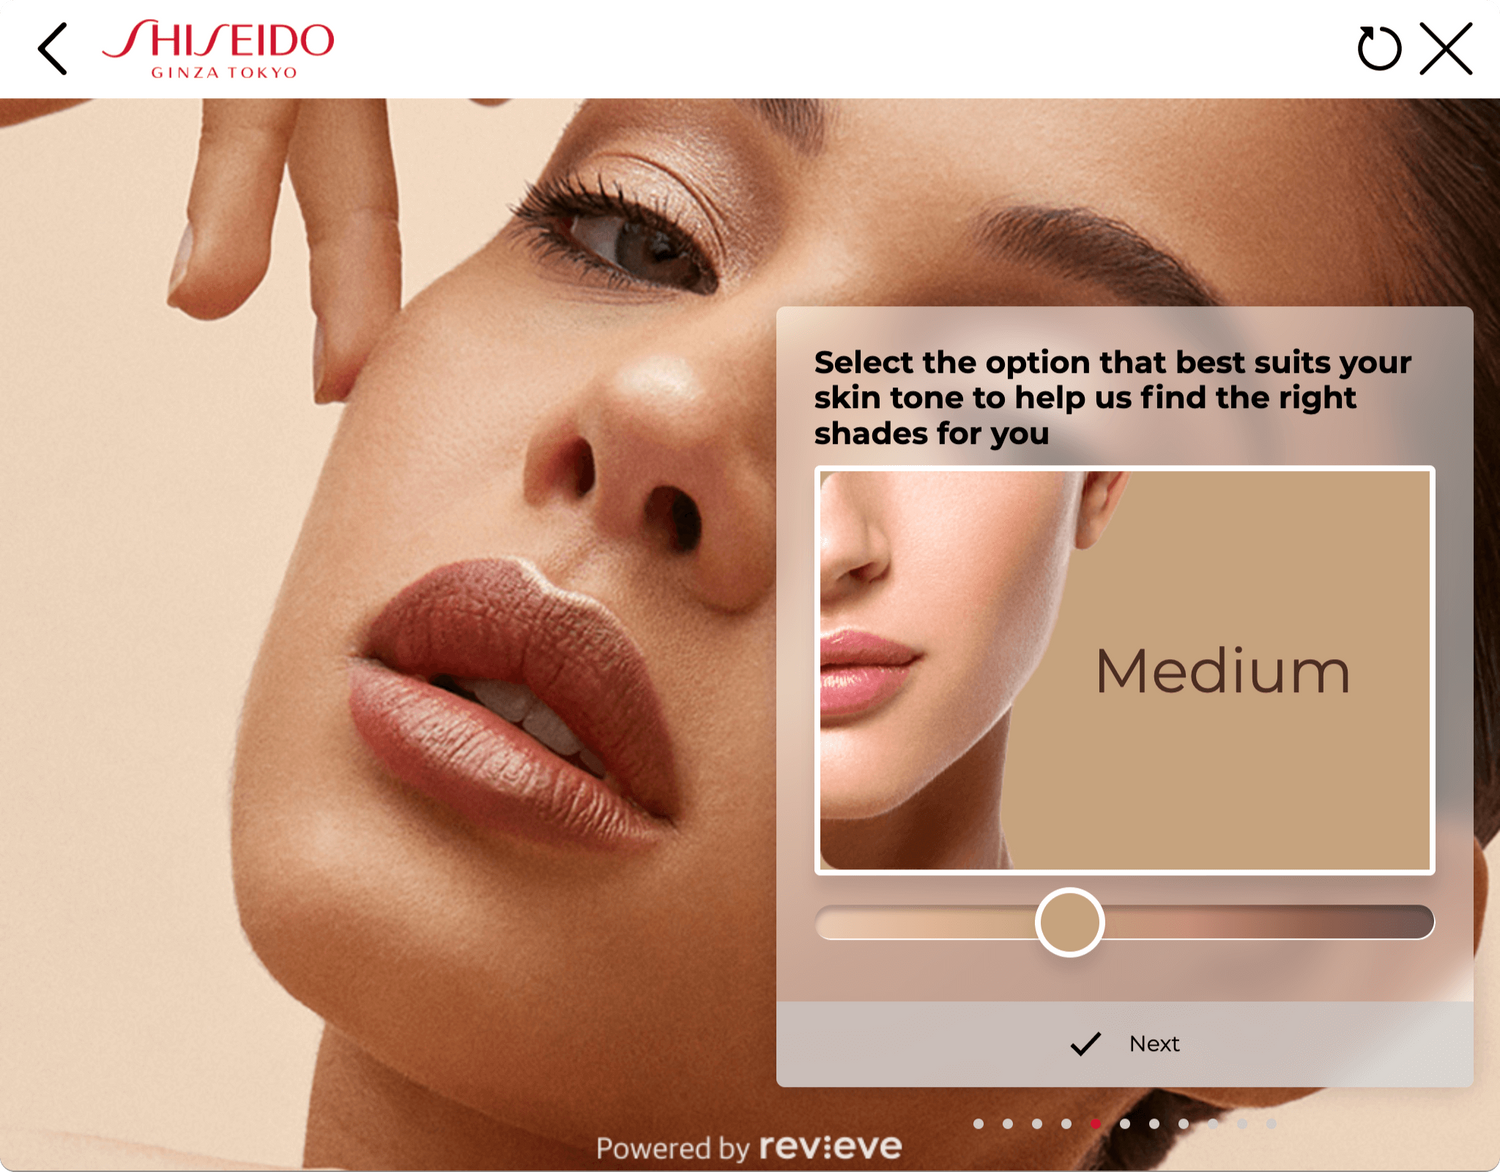 shiseido revieve diagnostic makeup